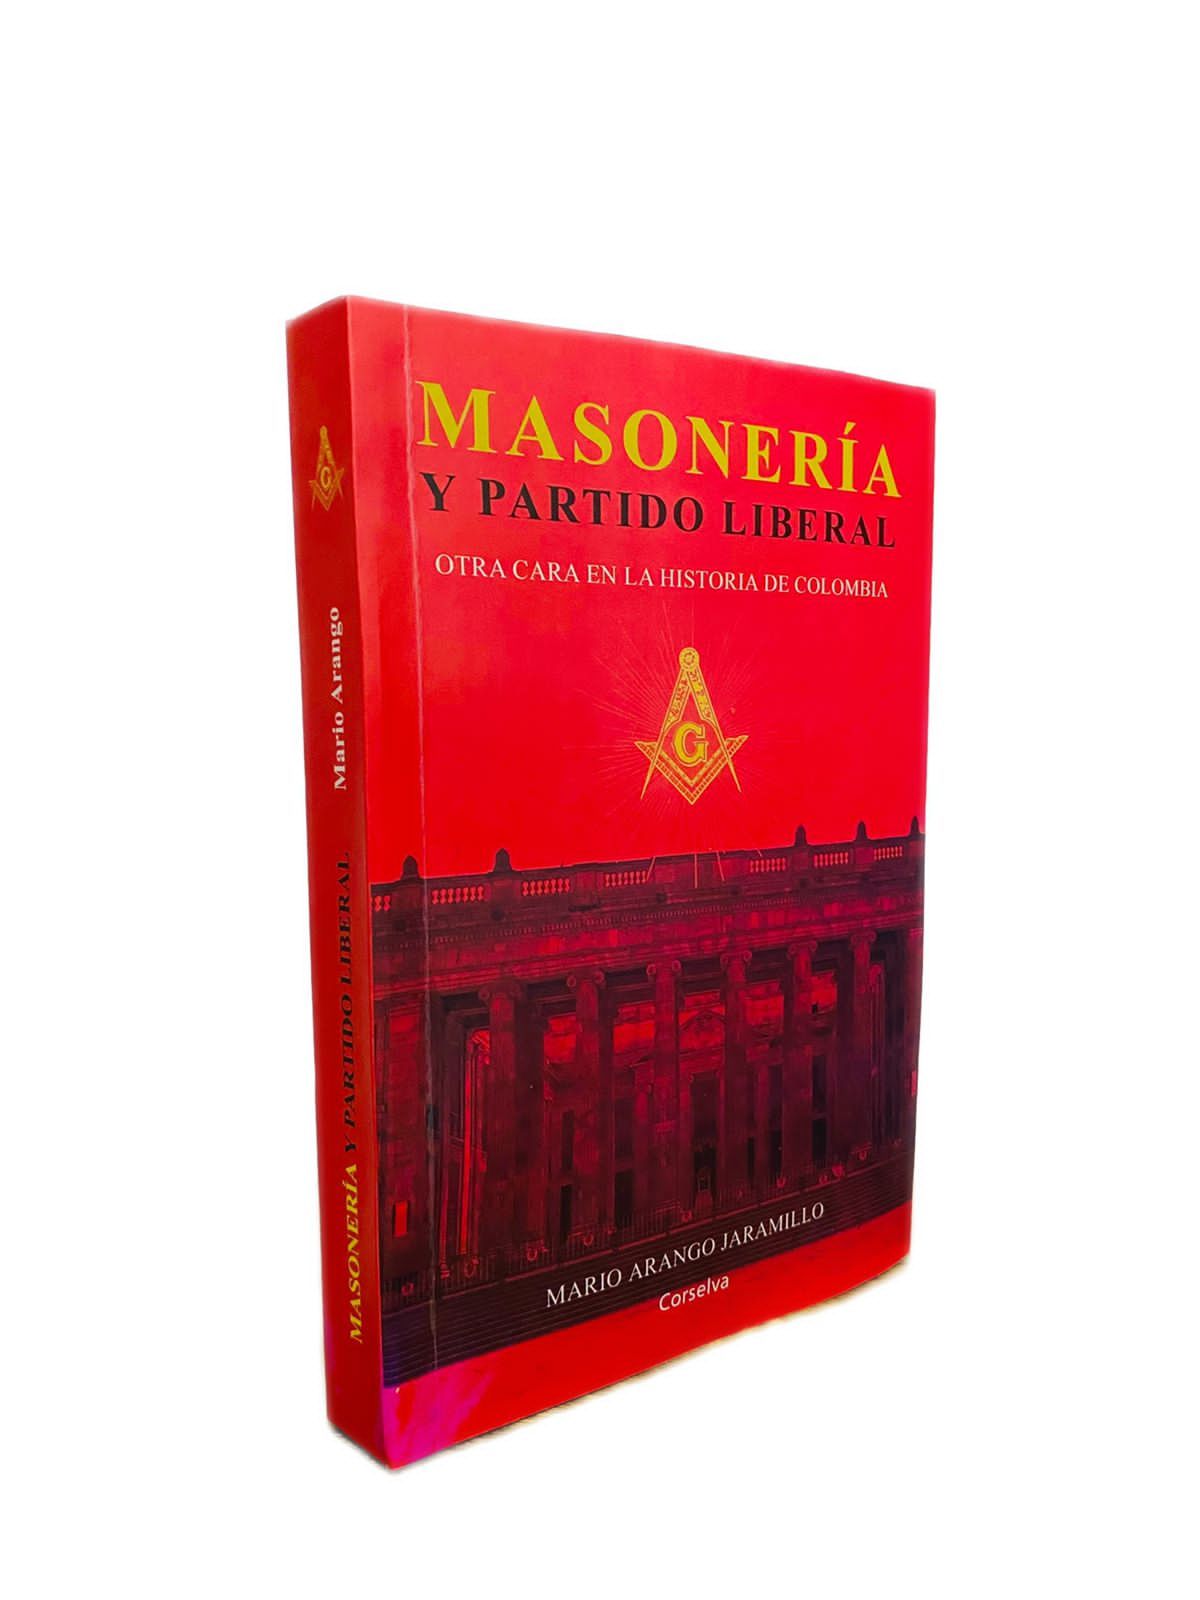 Featured image for “Gran Logia de Antioquia publica edición especial del libro “Masonería y Partido Liberal”.”